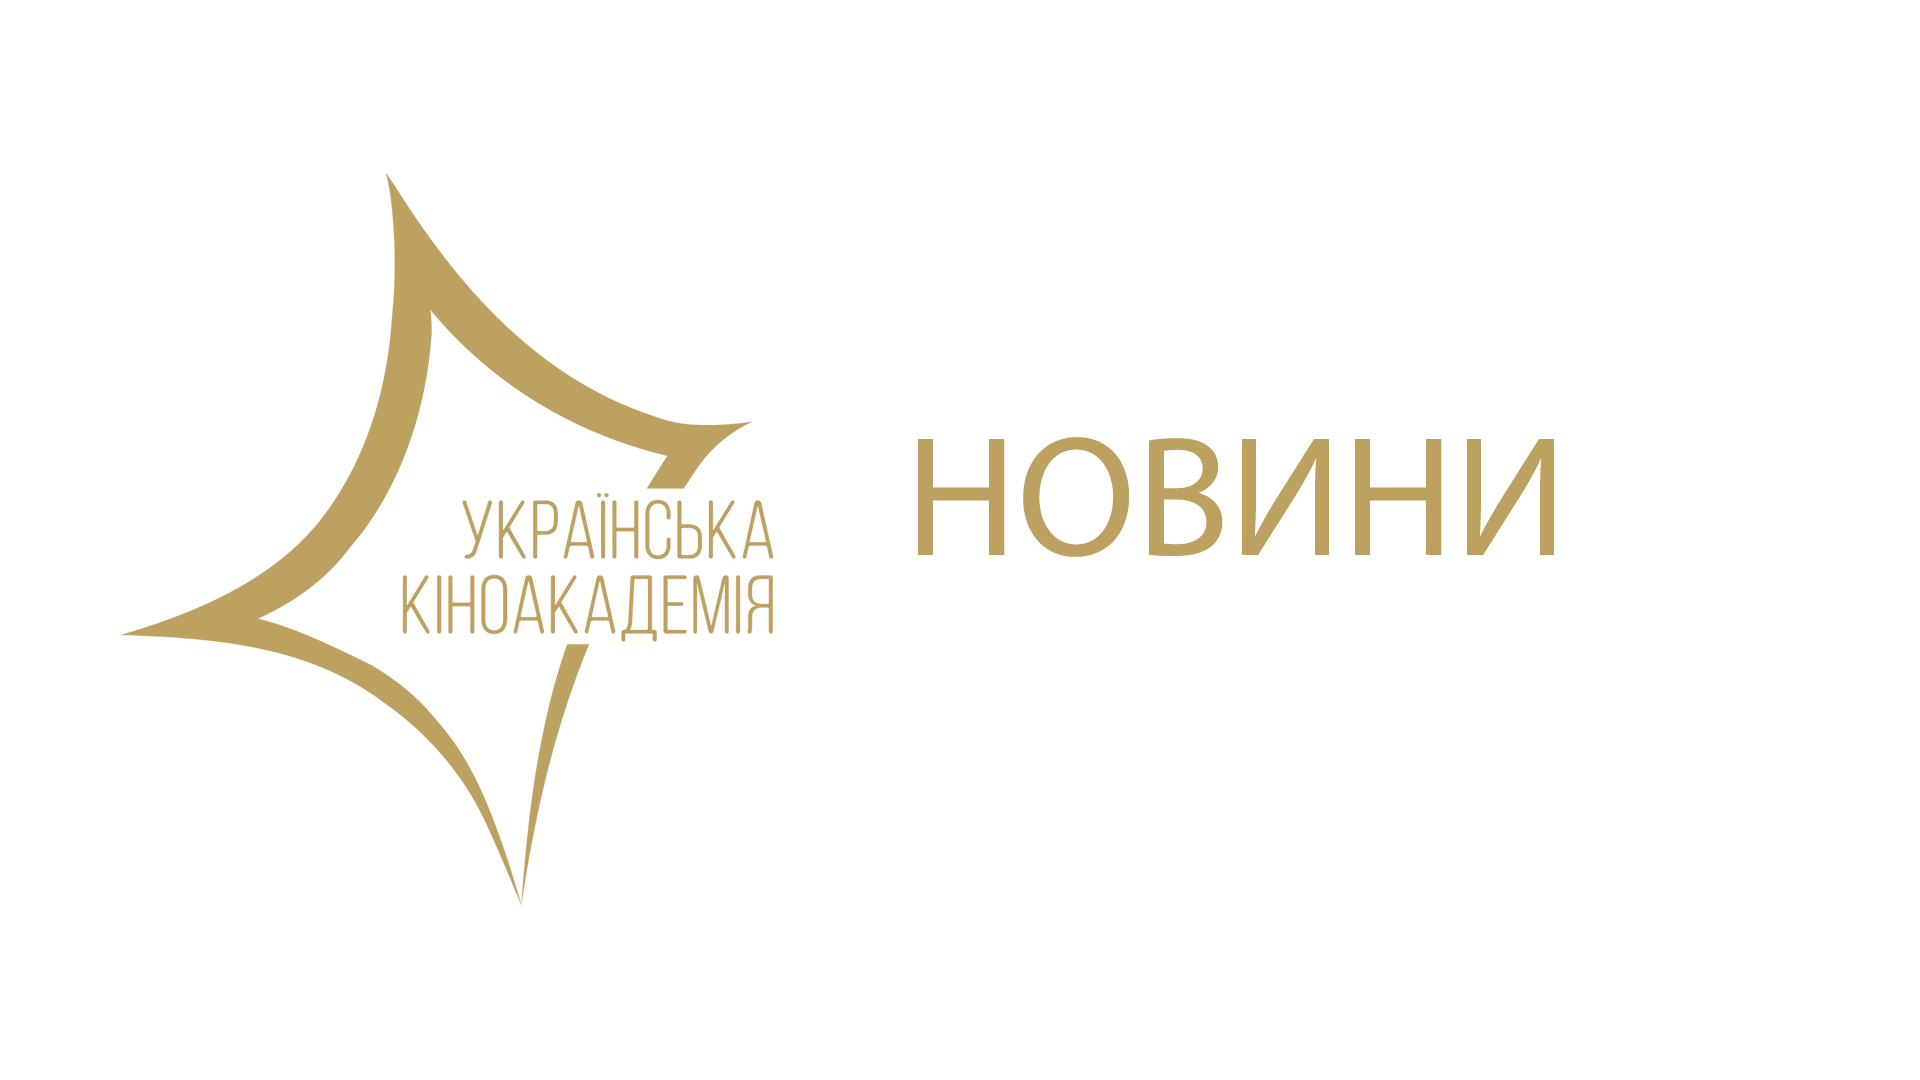 <p>З 27 квітня поновлено прийом заявок на членство в Українській кіноакадемії. Подати заявку на вступ можна до 30 листопада (включно), заповнивши <a rel="nofollow" href="http://uafilmacademy.org/ua/members">онлайн-форму</a>.</p>